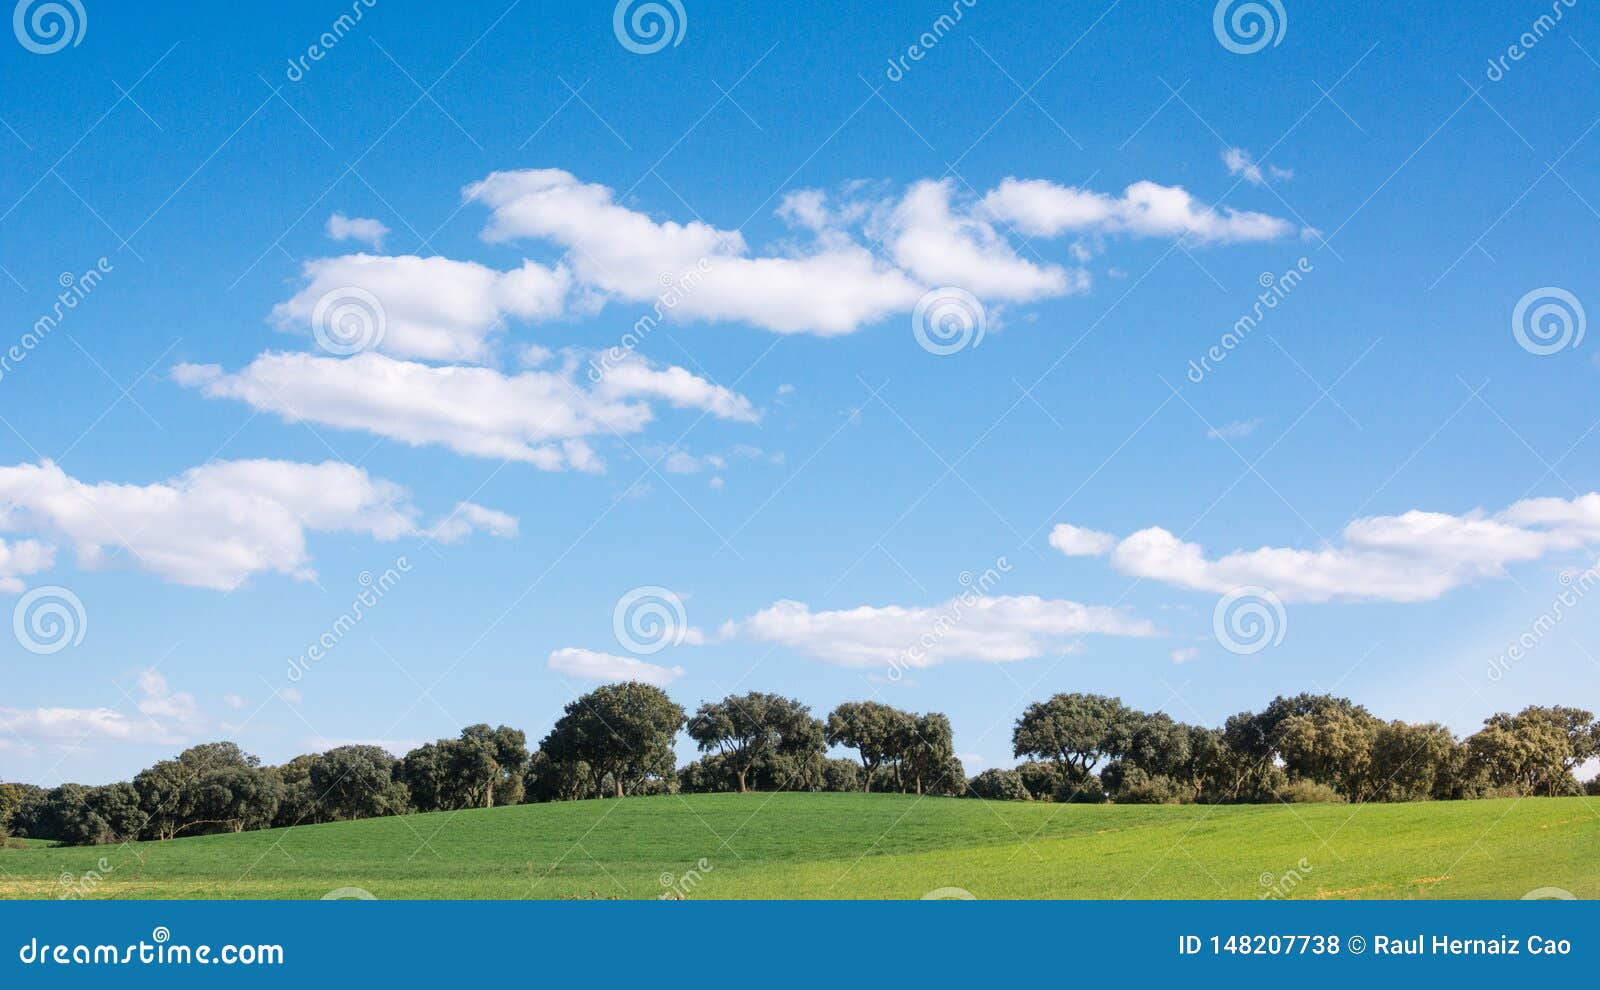 oak grove on a green grass field, under a blue sky. peacefull landscape